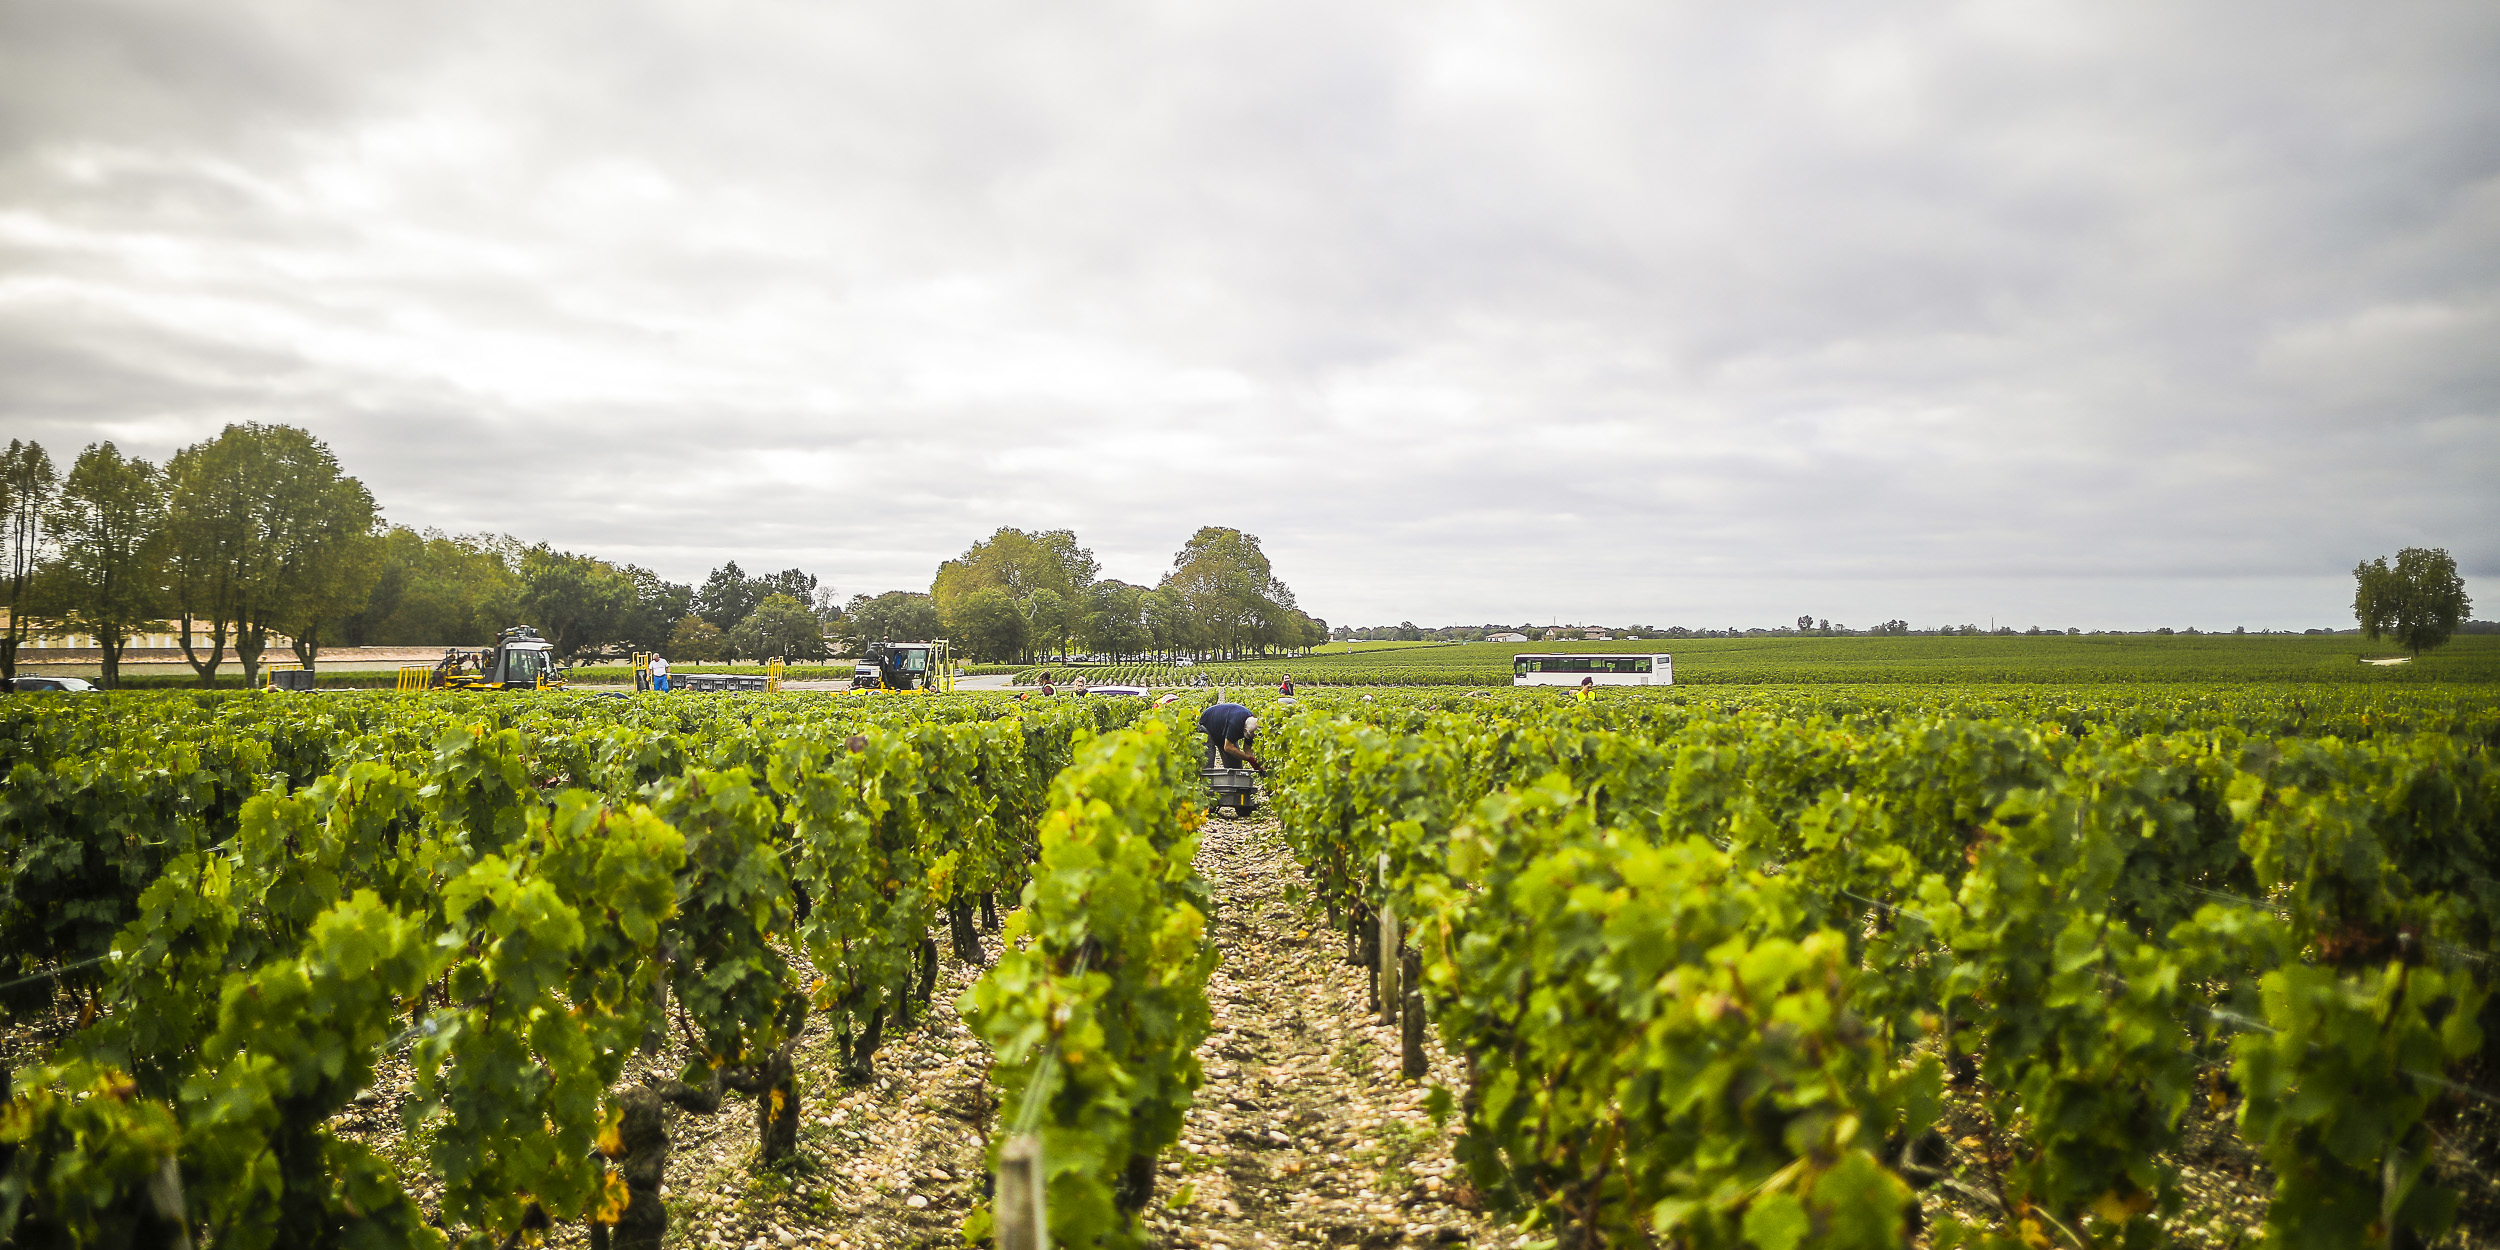 Les ventes de vins de Bordeaux ont dévissé de 400 millions d'euros en 2020